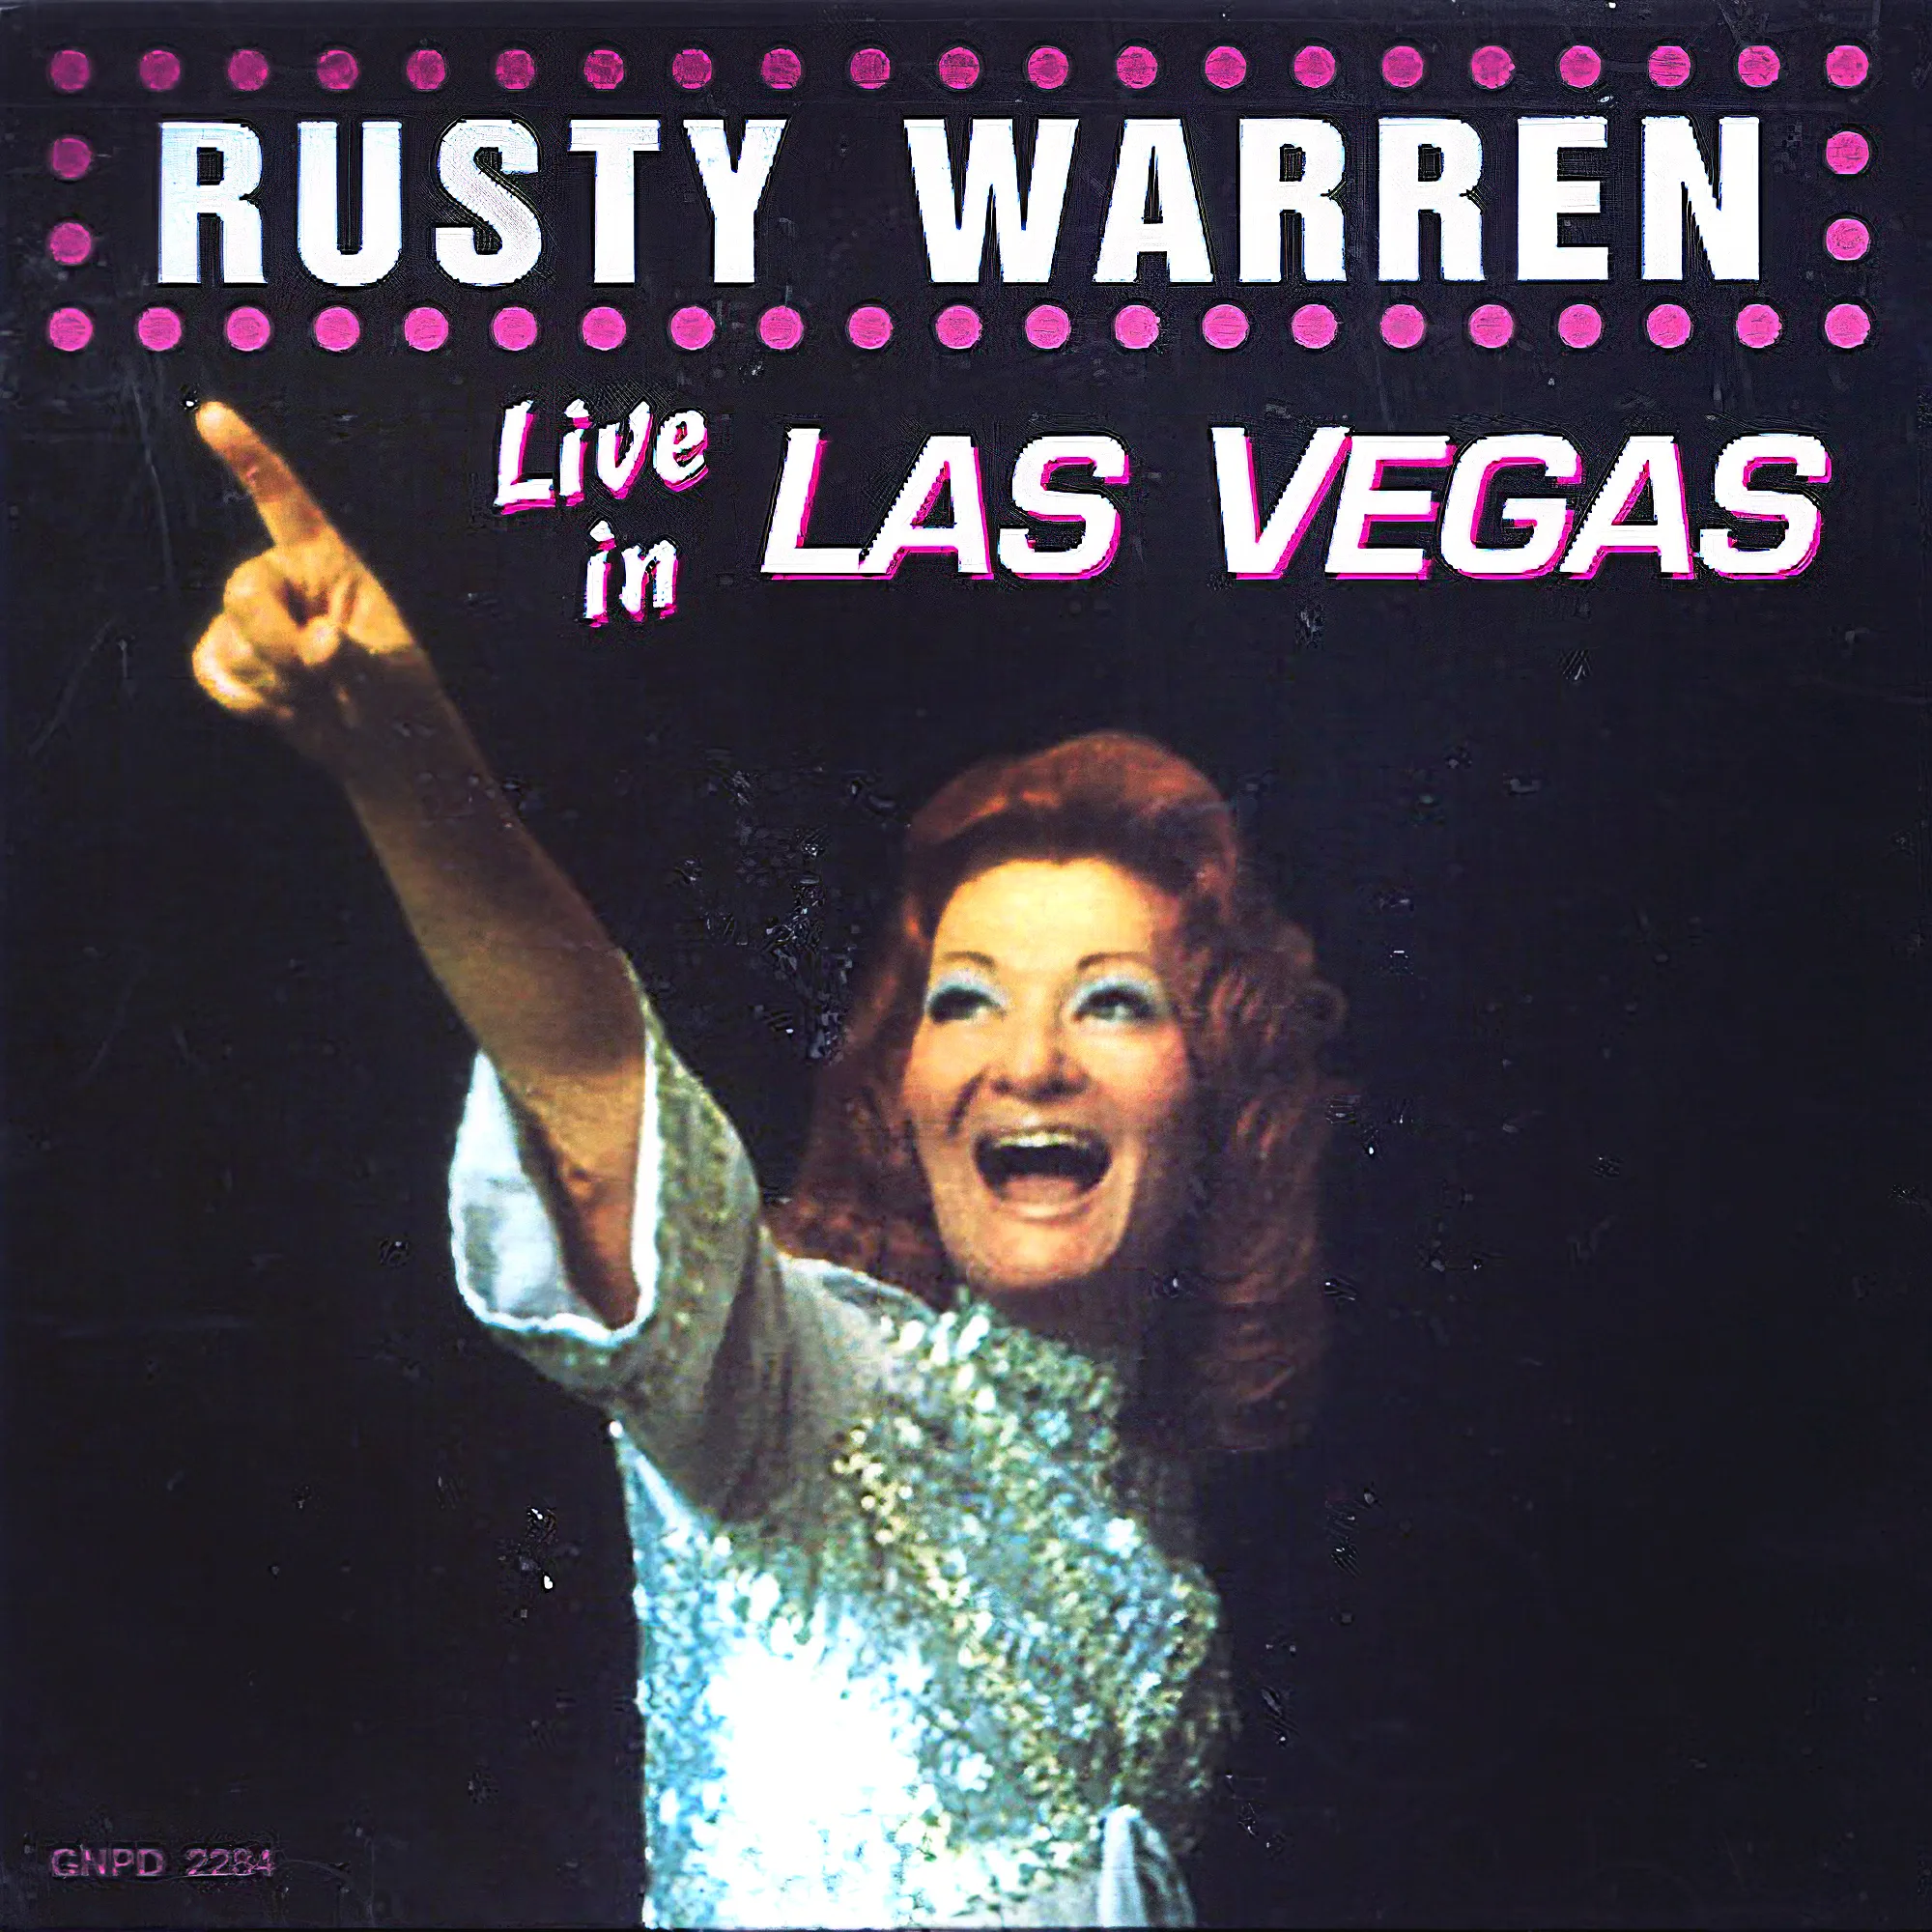 Rusty Warren Live in Las Vegas album cover.